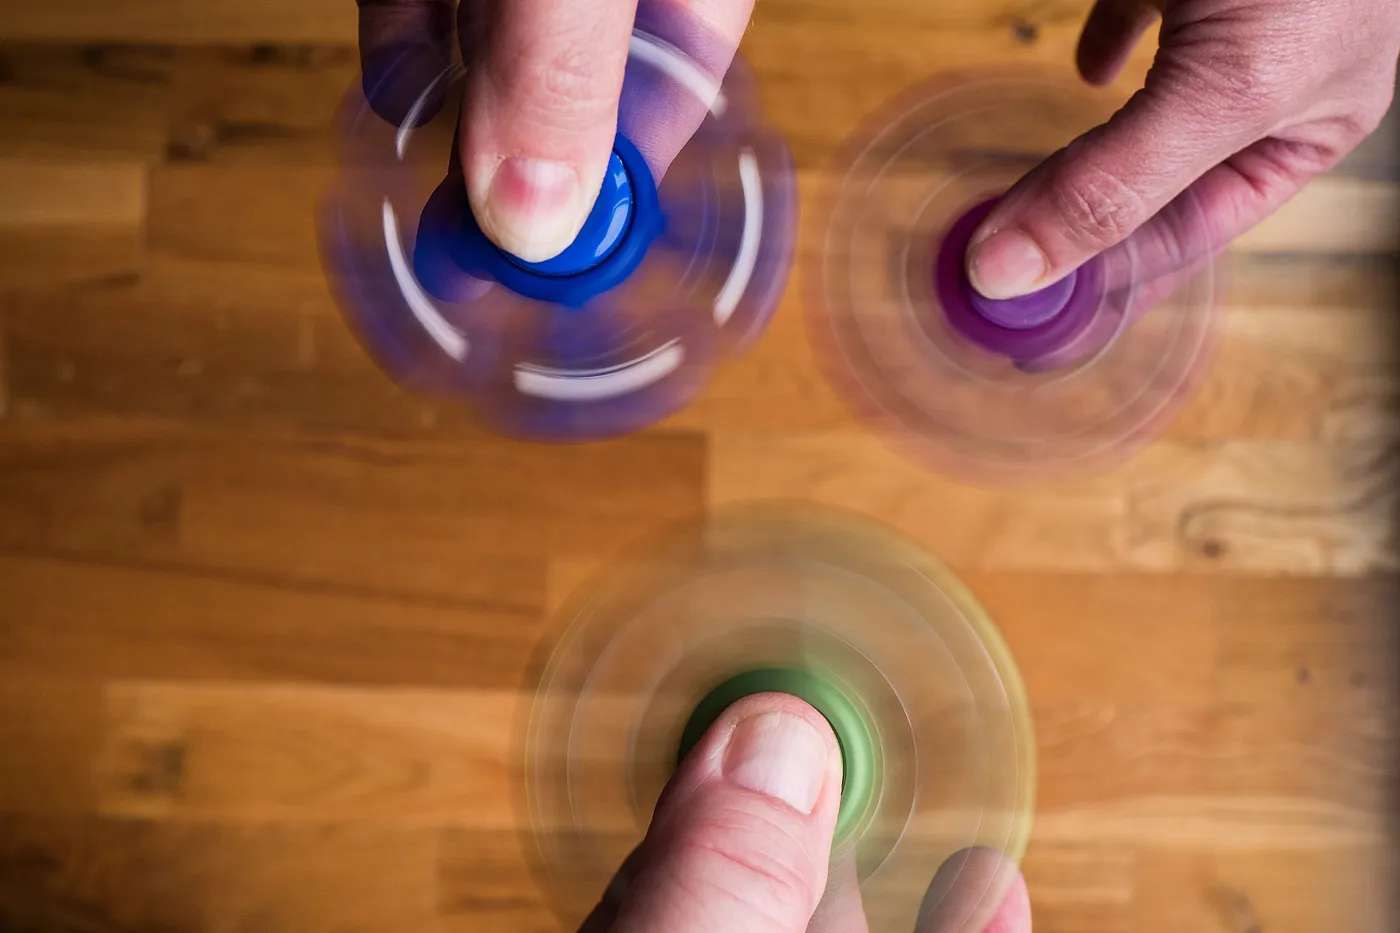 Fidget Spinner Games - Finger Spinners & Fidget Toys::Appstore  for Android